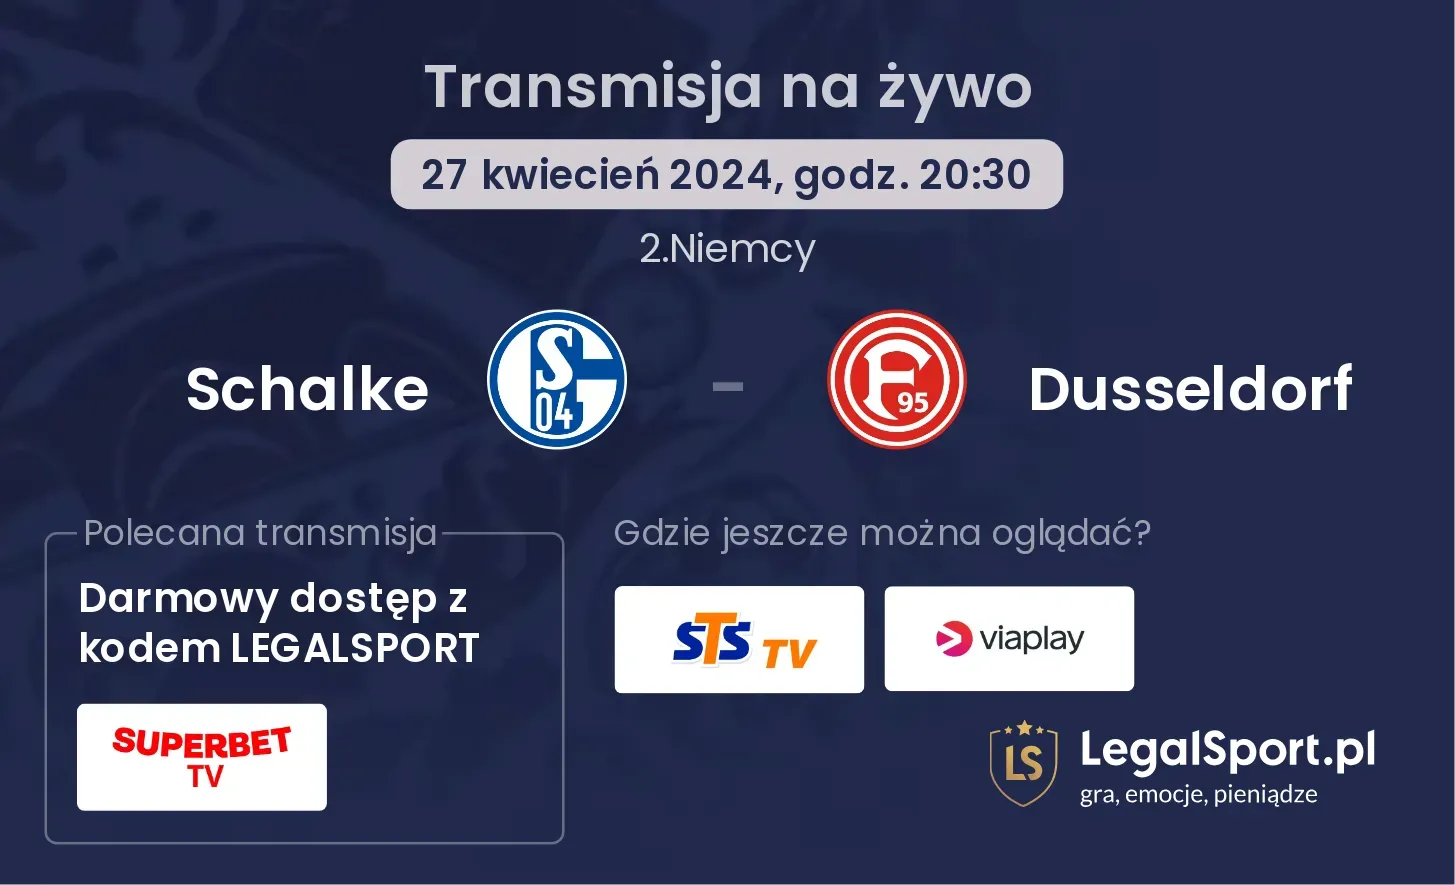 Schalke - Dusseldorf transmisja na żywo